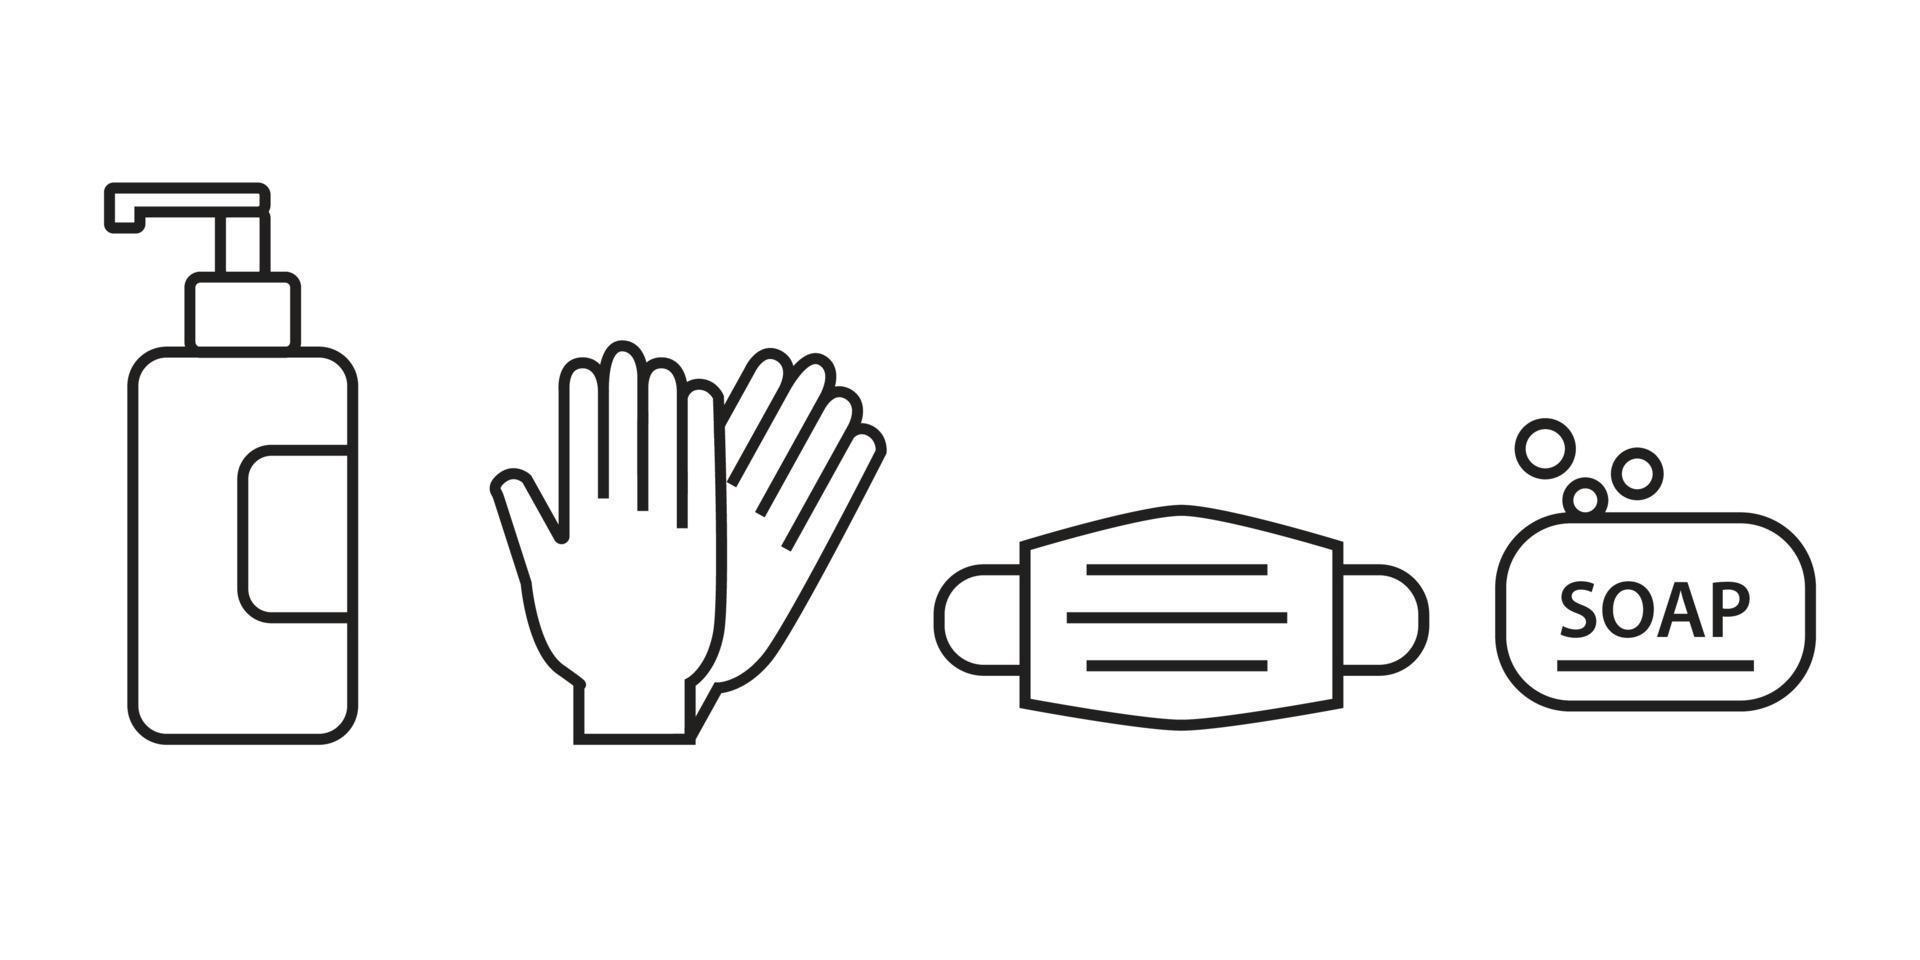 icone dei dispositivi di protezione individuale - maschera medica, guanti in lattice, sapone. coronavirus, articoli di prevenzione covid 19. linea, simboli di contorno. illustrazione vettoriale